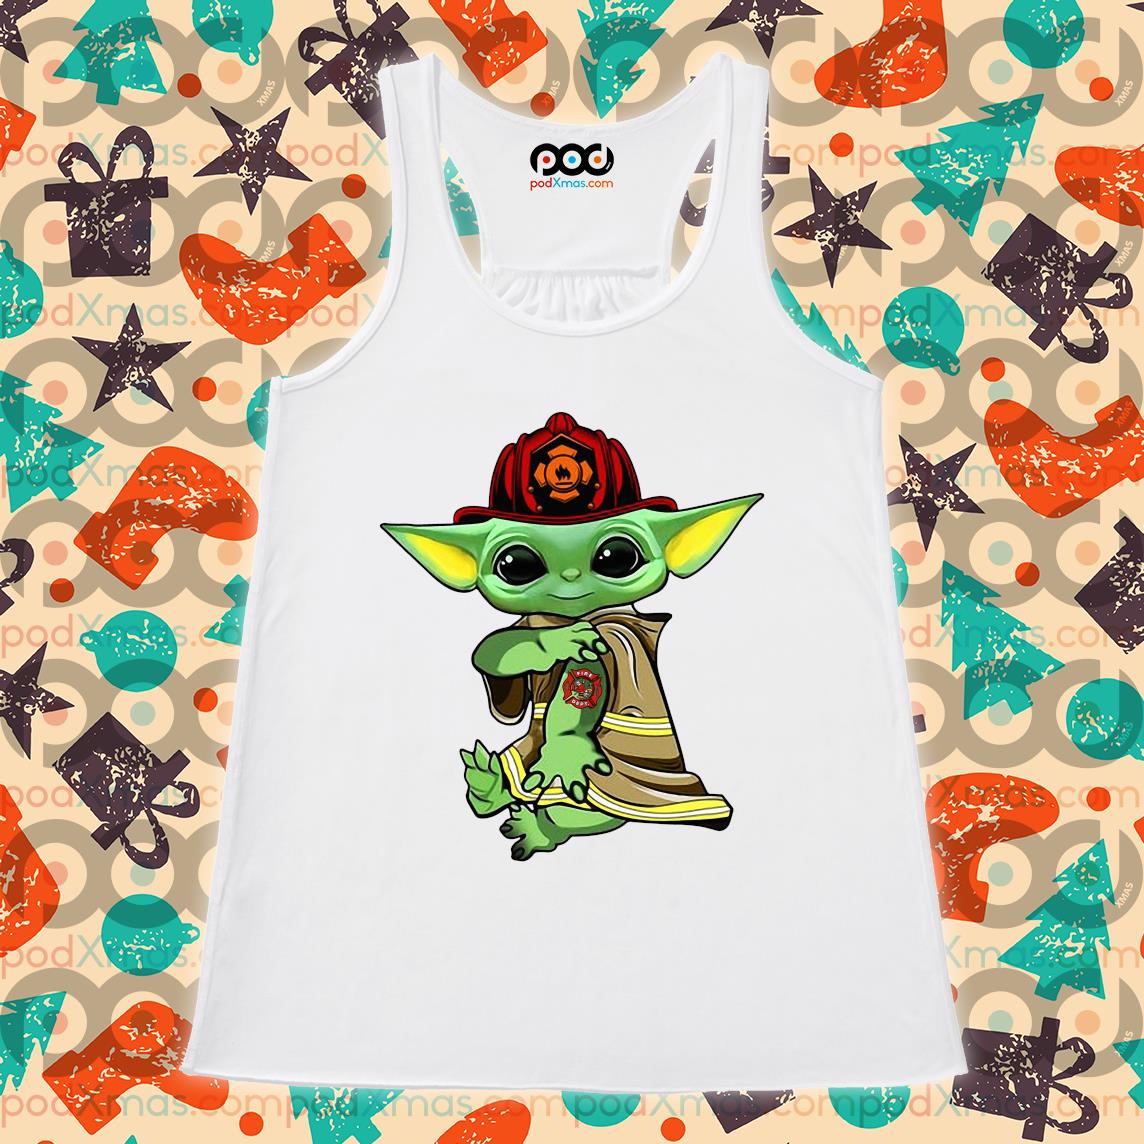 Buy Baby Yoda tattoo Fireman shirt For Free Shipping CUSTOM XMAS PRODUCT  COMPANY